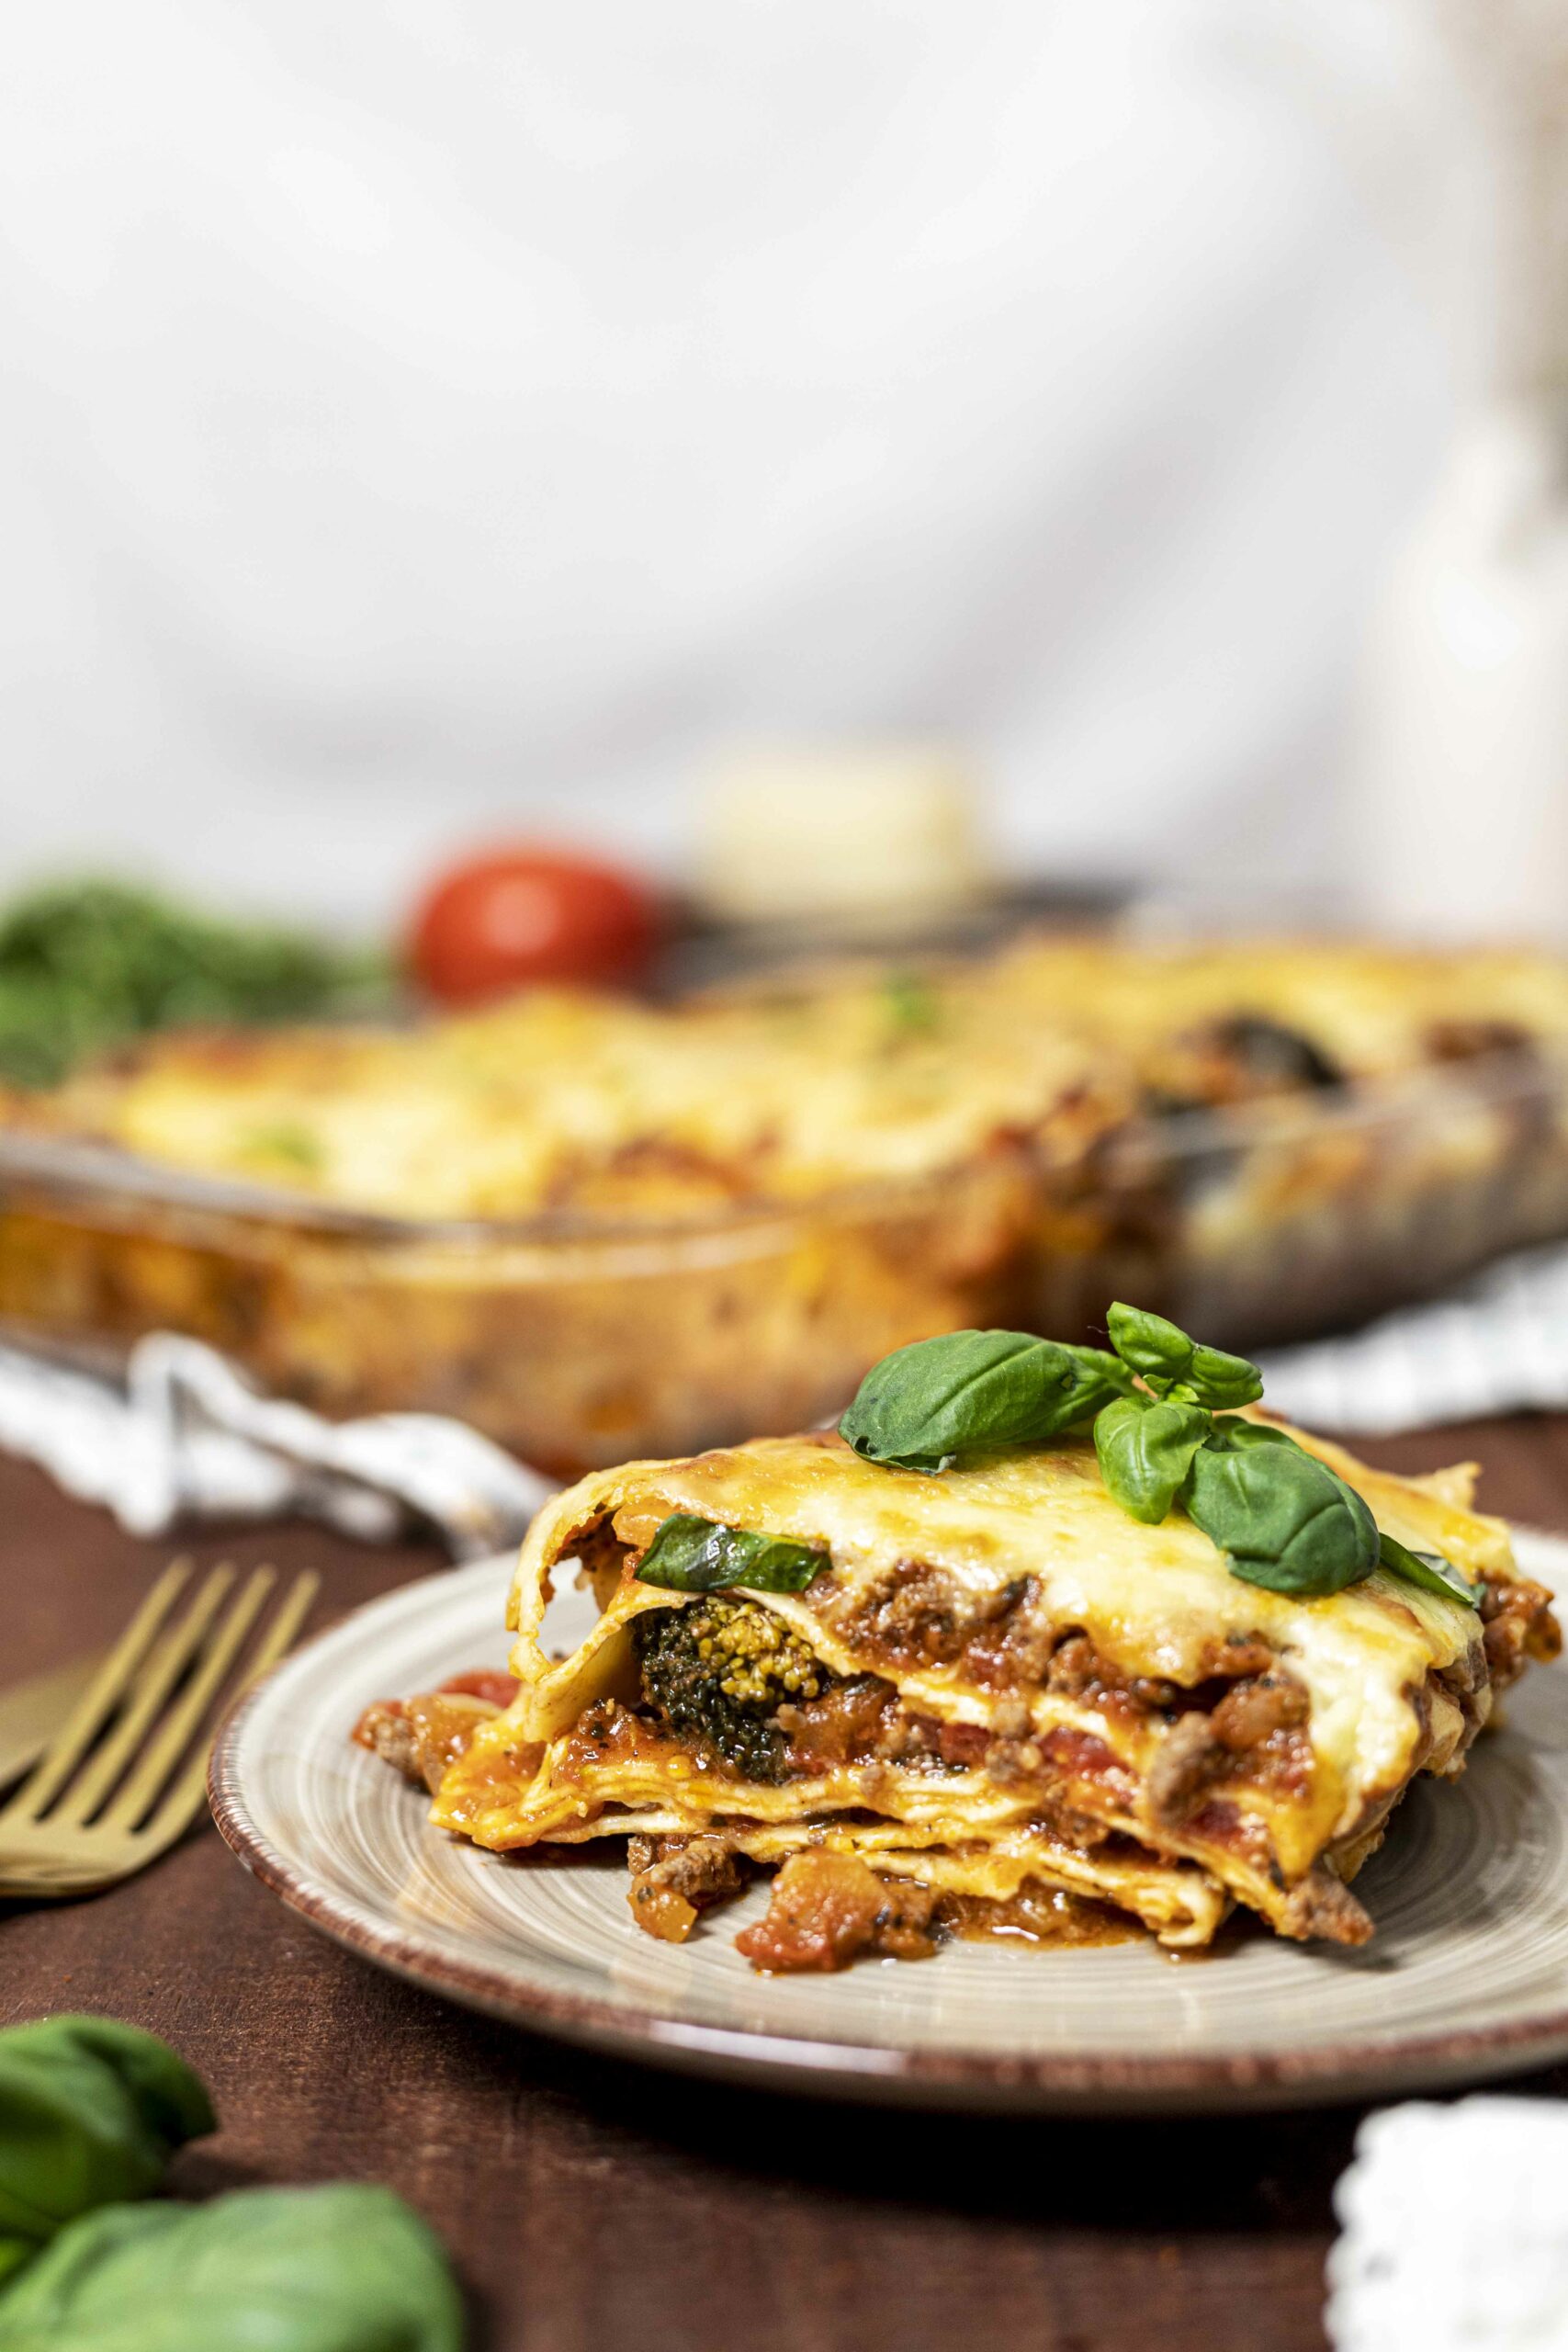 Klassíkst lasagna eins og það gerist best